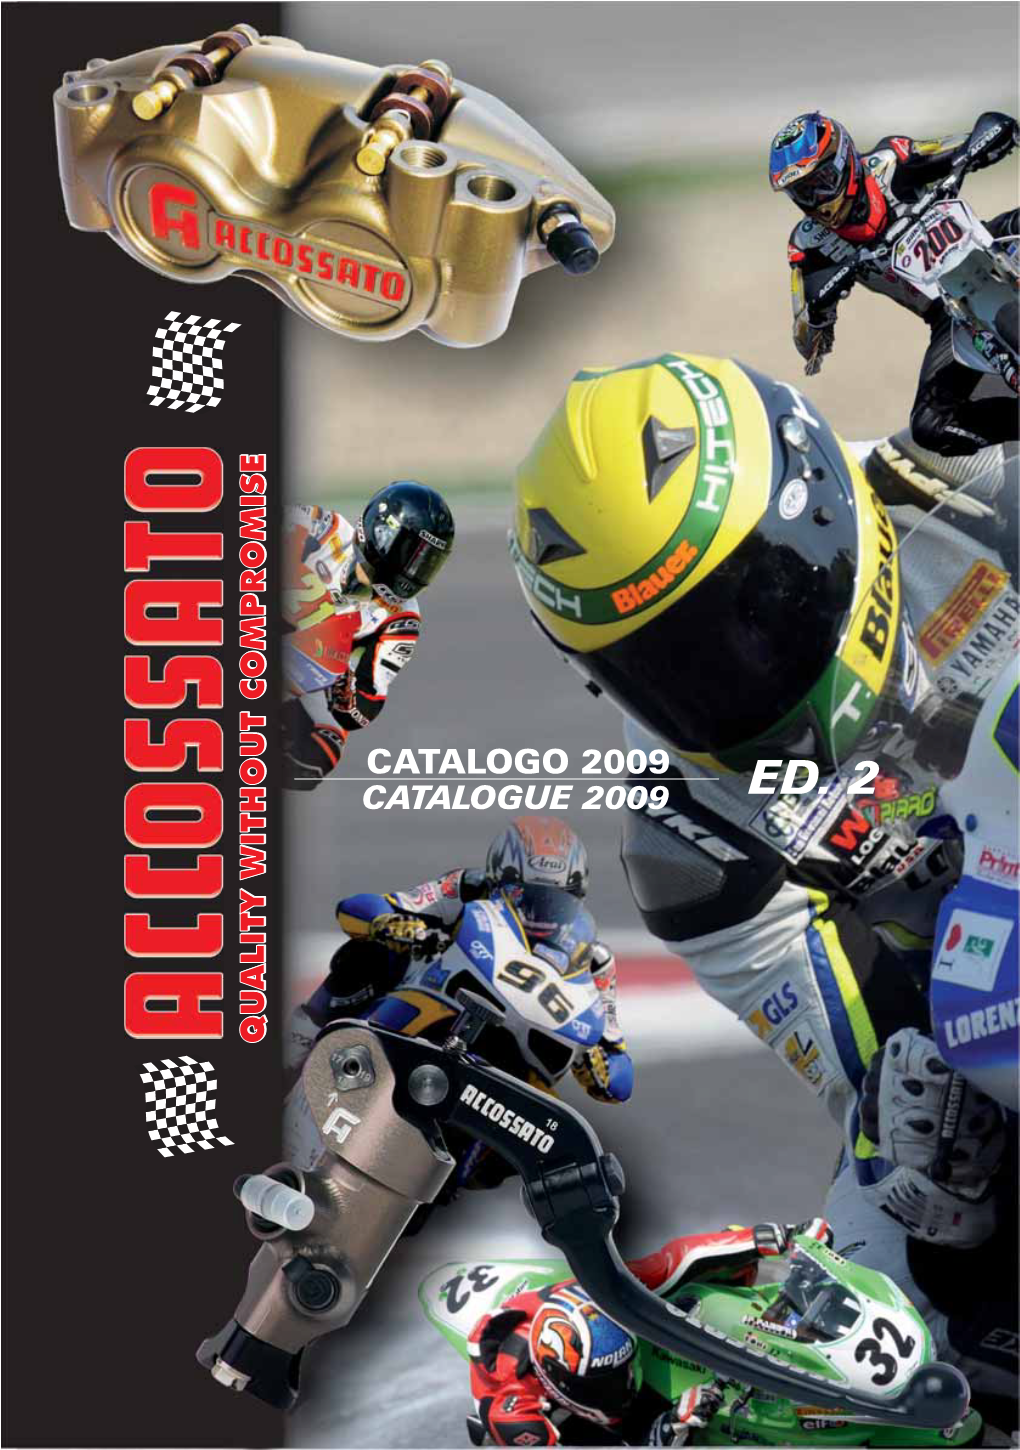 Catalogo 2009 O O Catalogue 2009 Ed